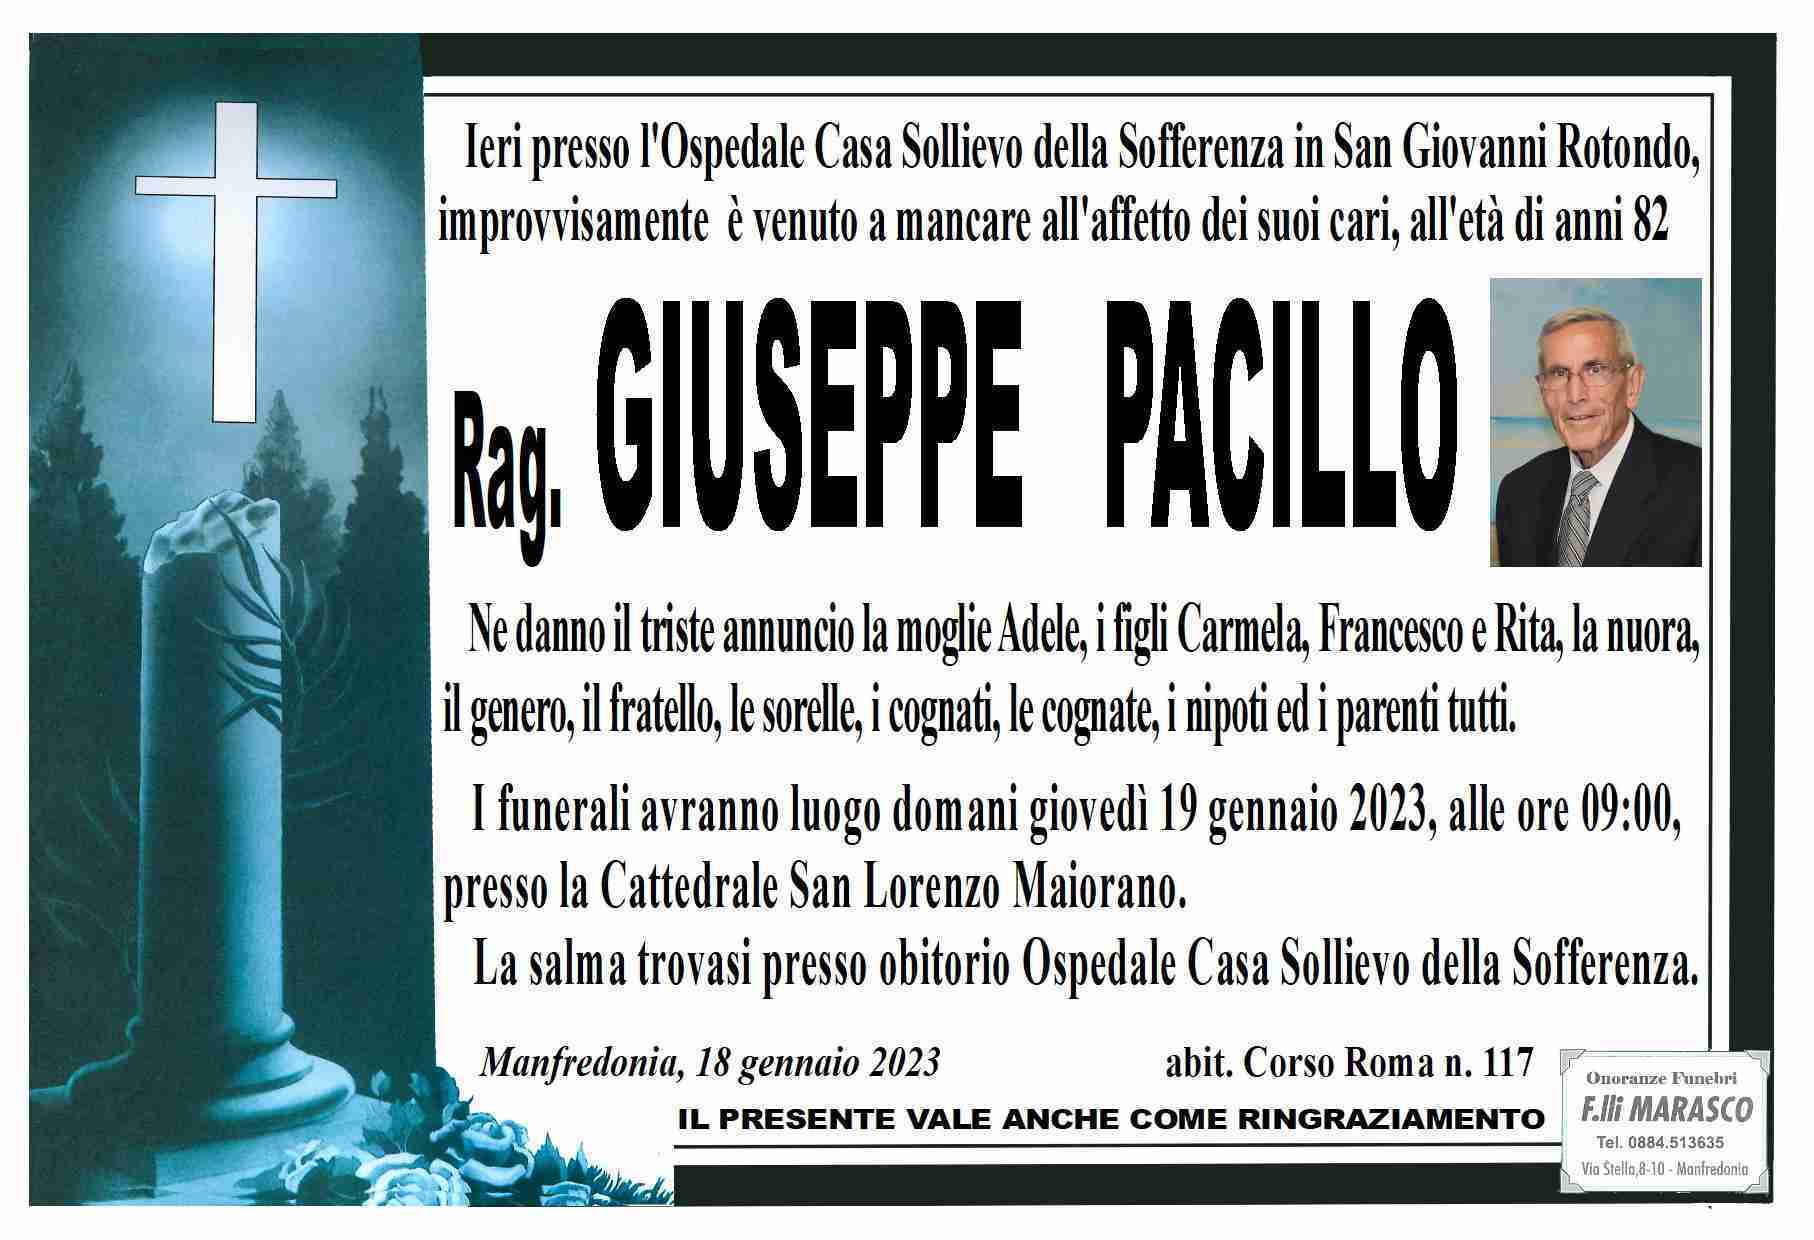 Giuseppe Pacillo